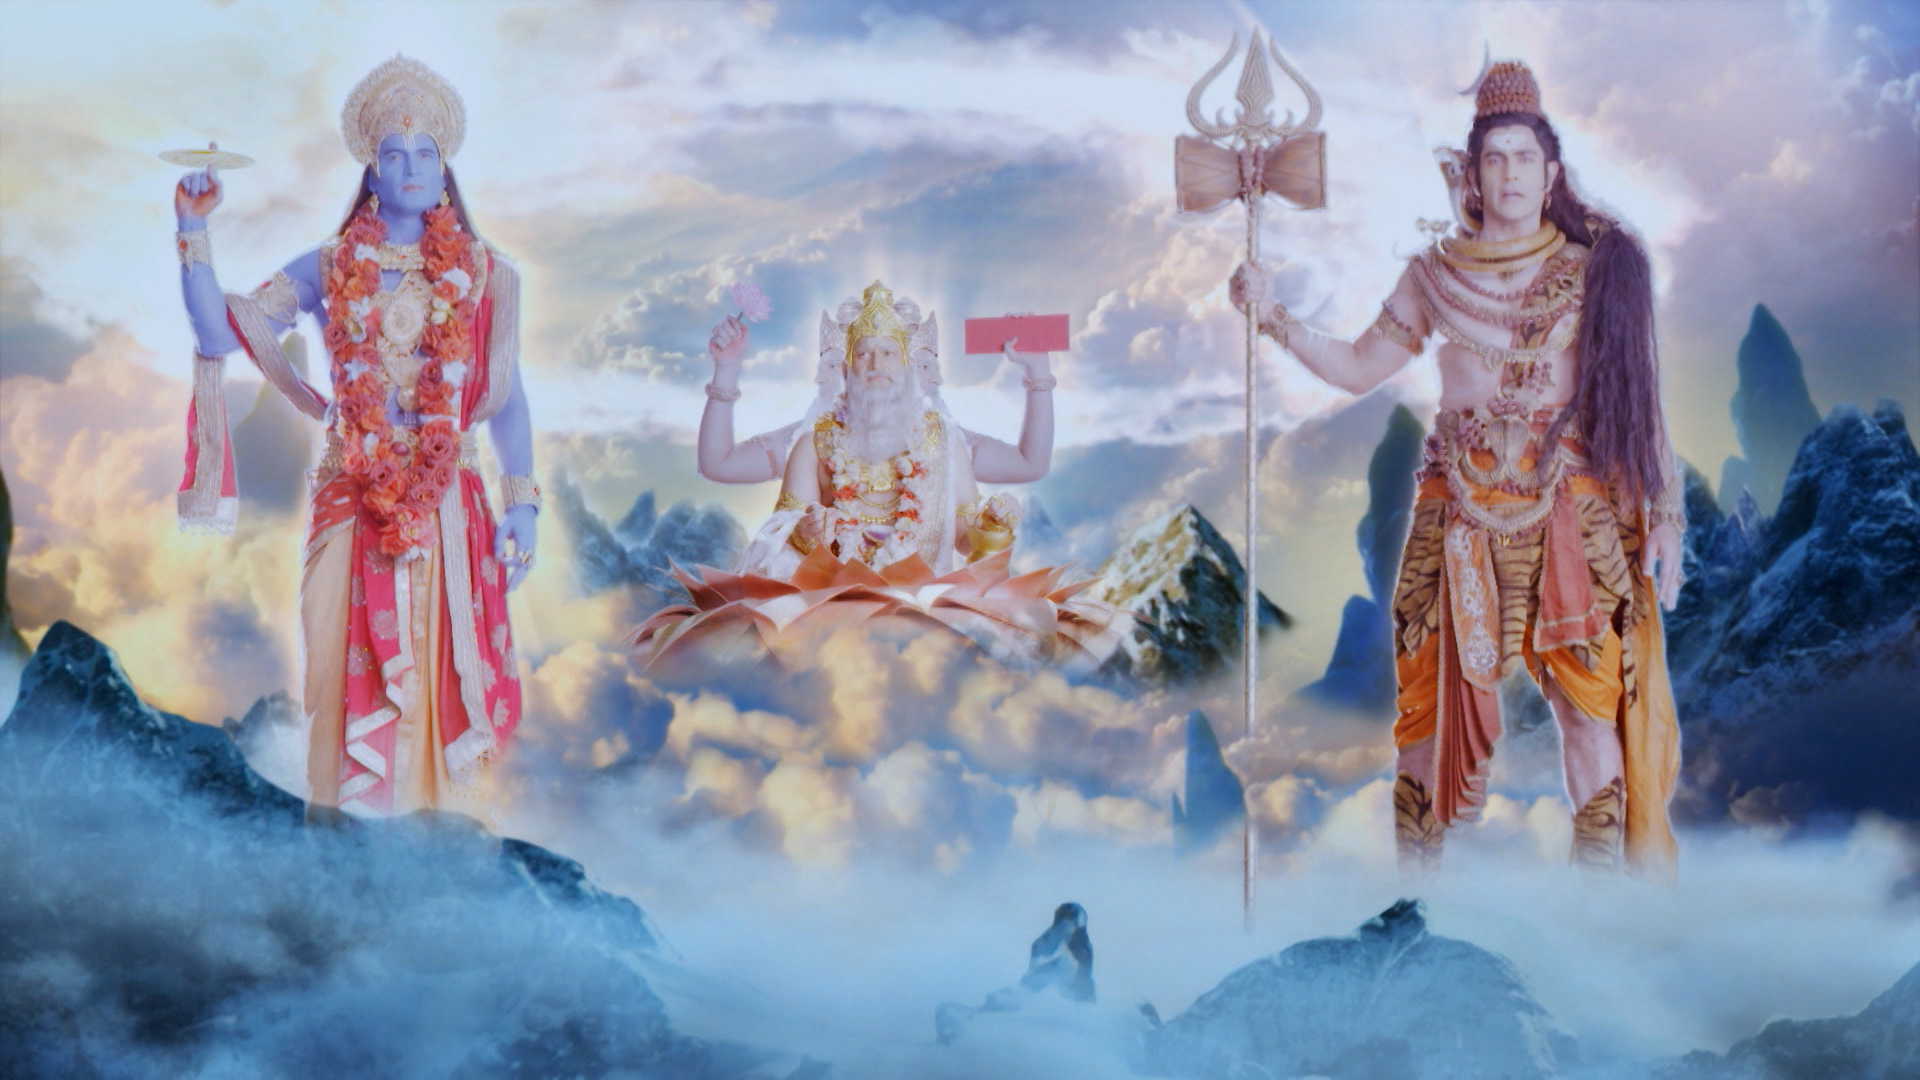 Tổng hợp các bộ phim Ấn Độ được yêu thích với đề tài về các vị thần